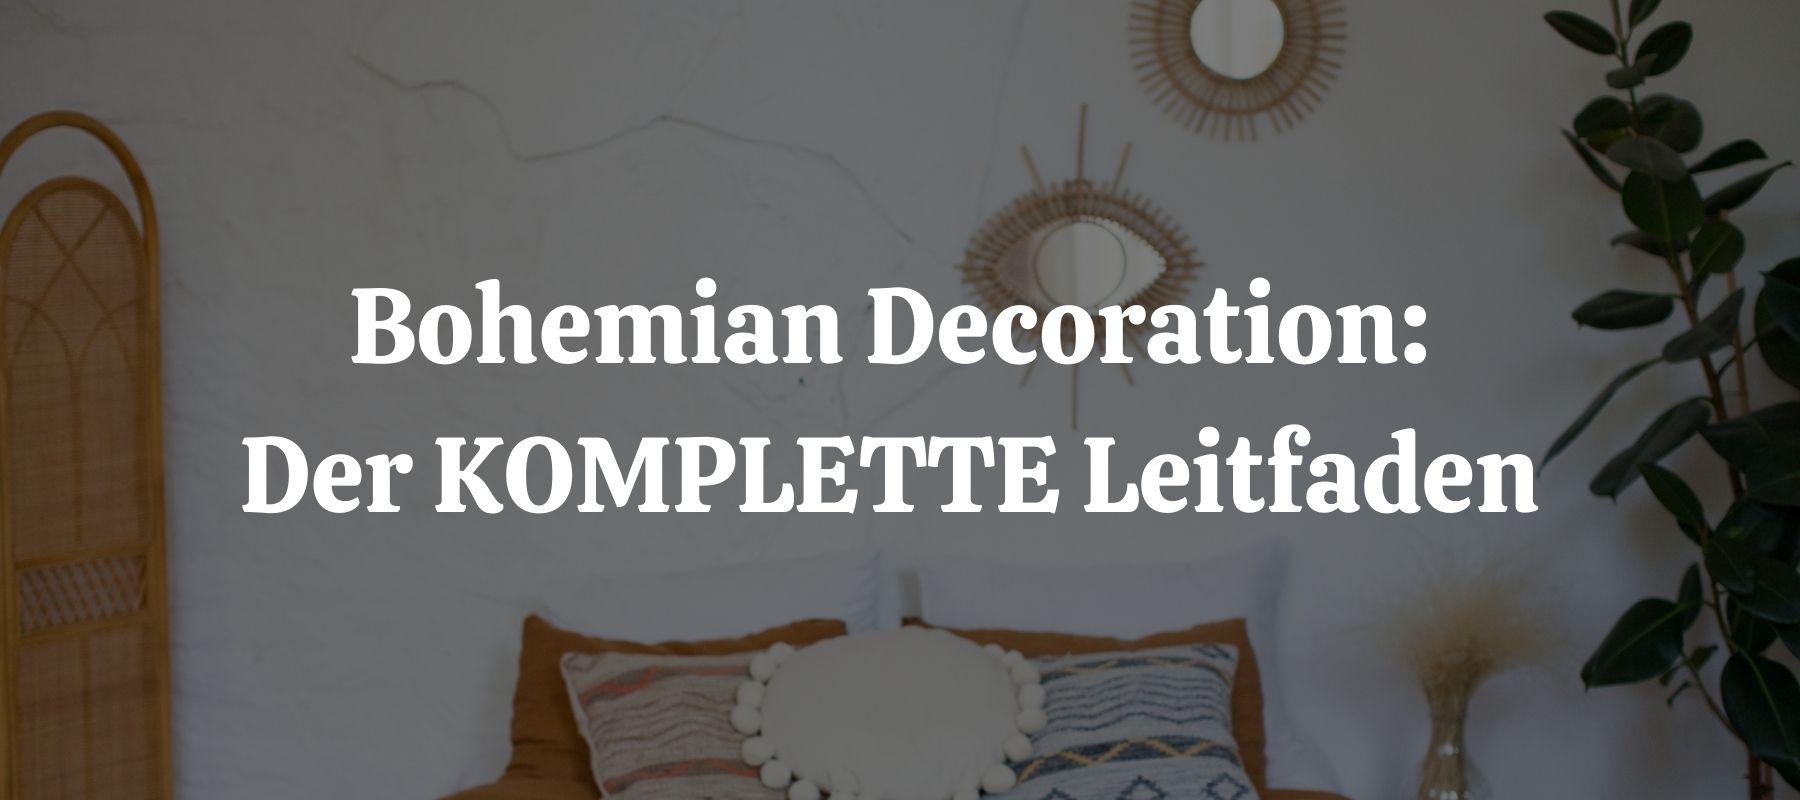 Bohemian Decoration: Der KOMPLETTE Leitfaden für Ihr ganzes Haus.